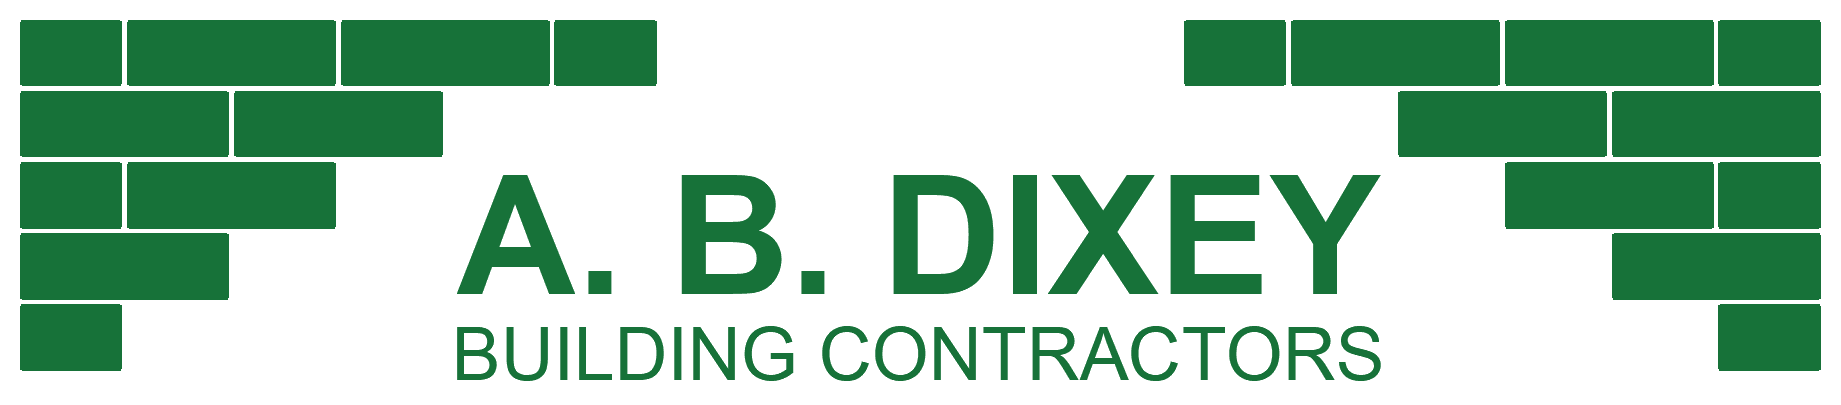 A.B. Dixey Building Contractors